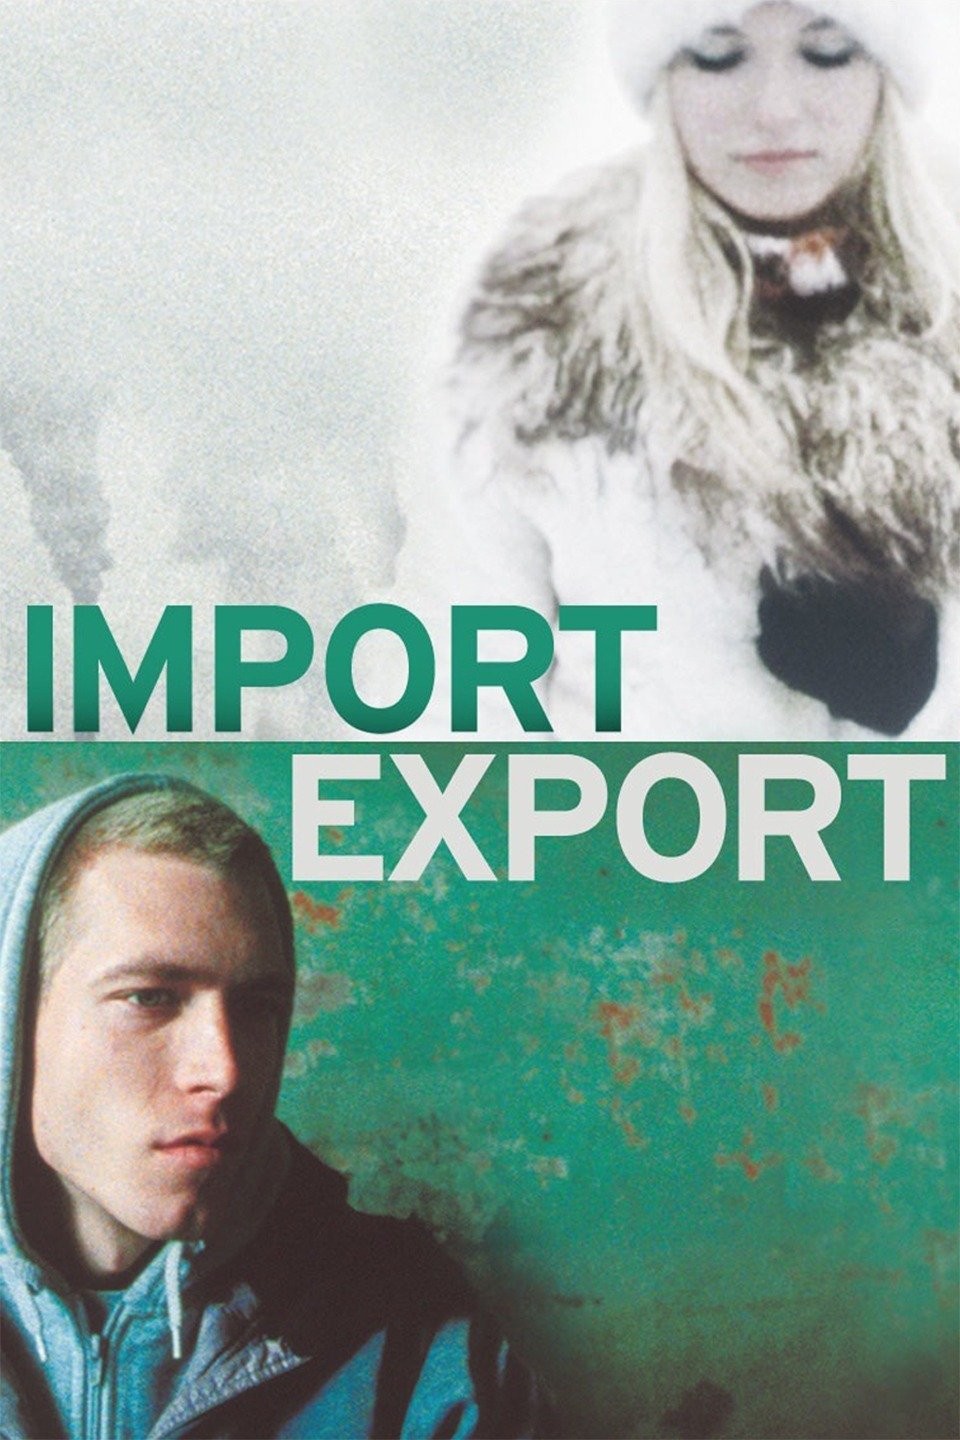 Import export 2007 movie